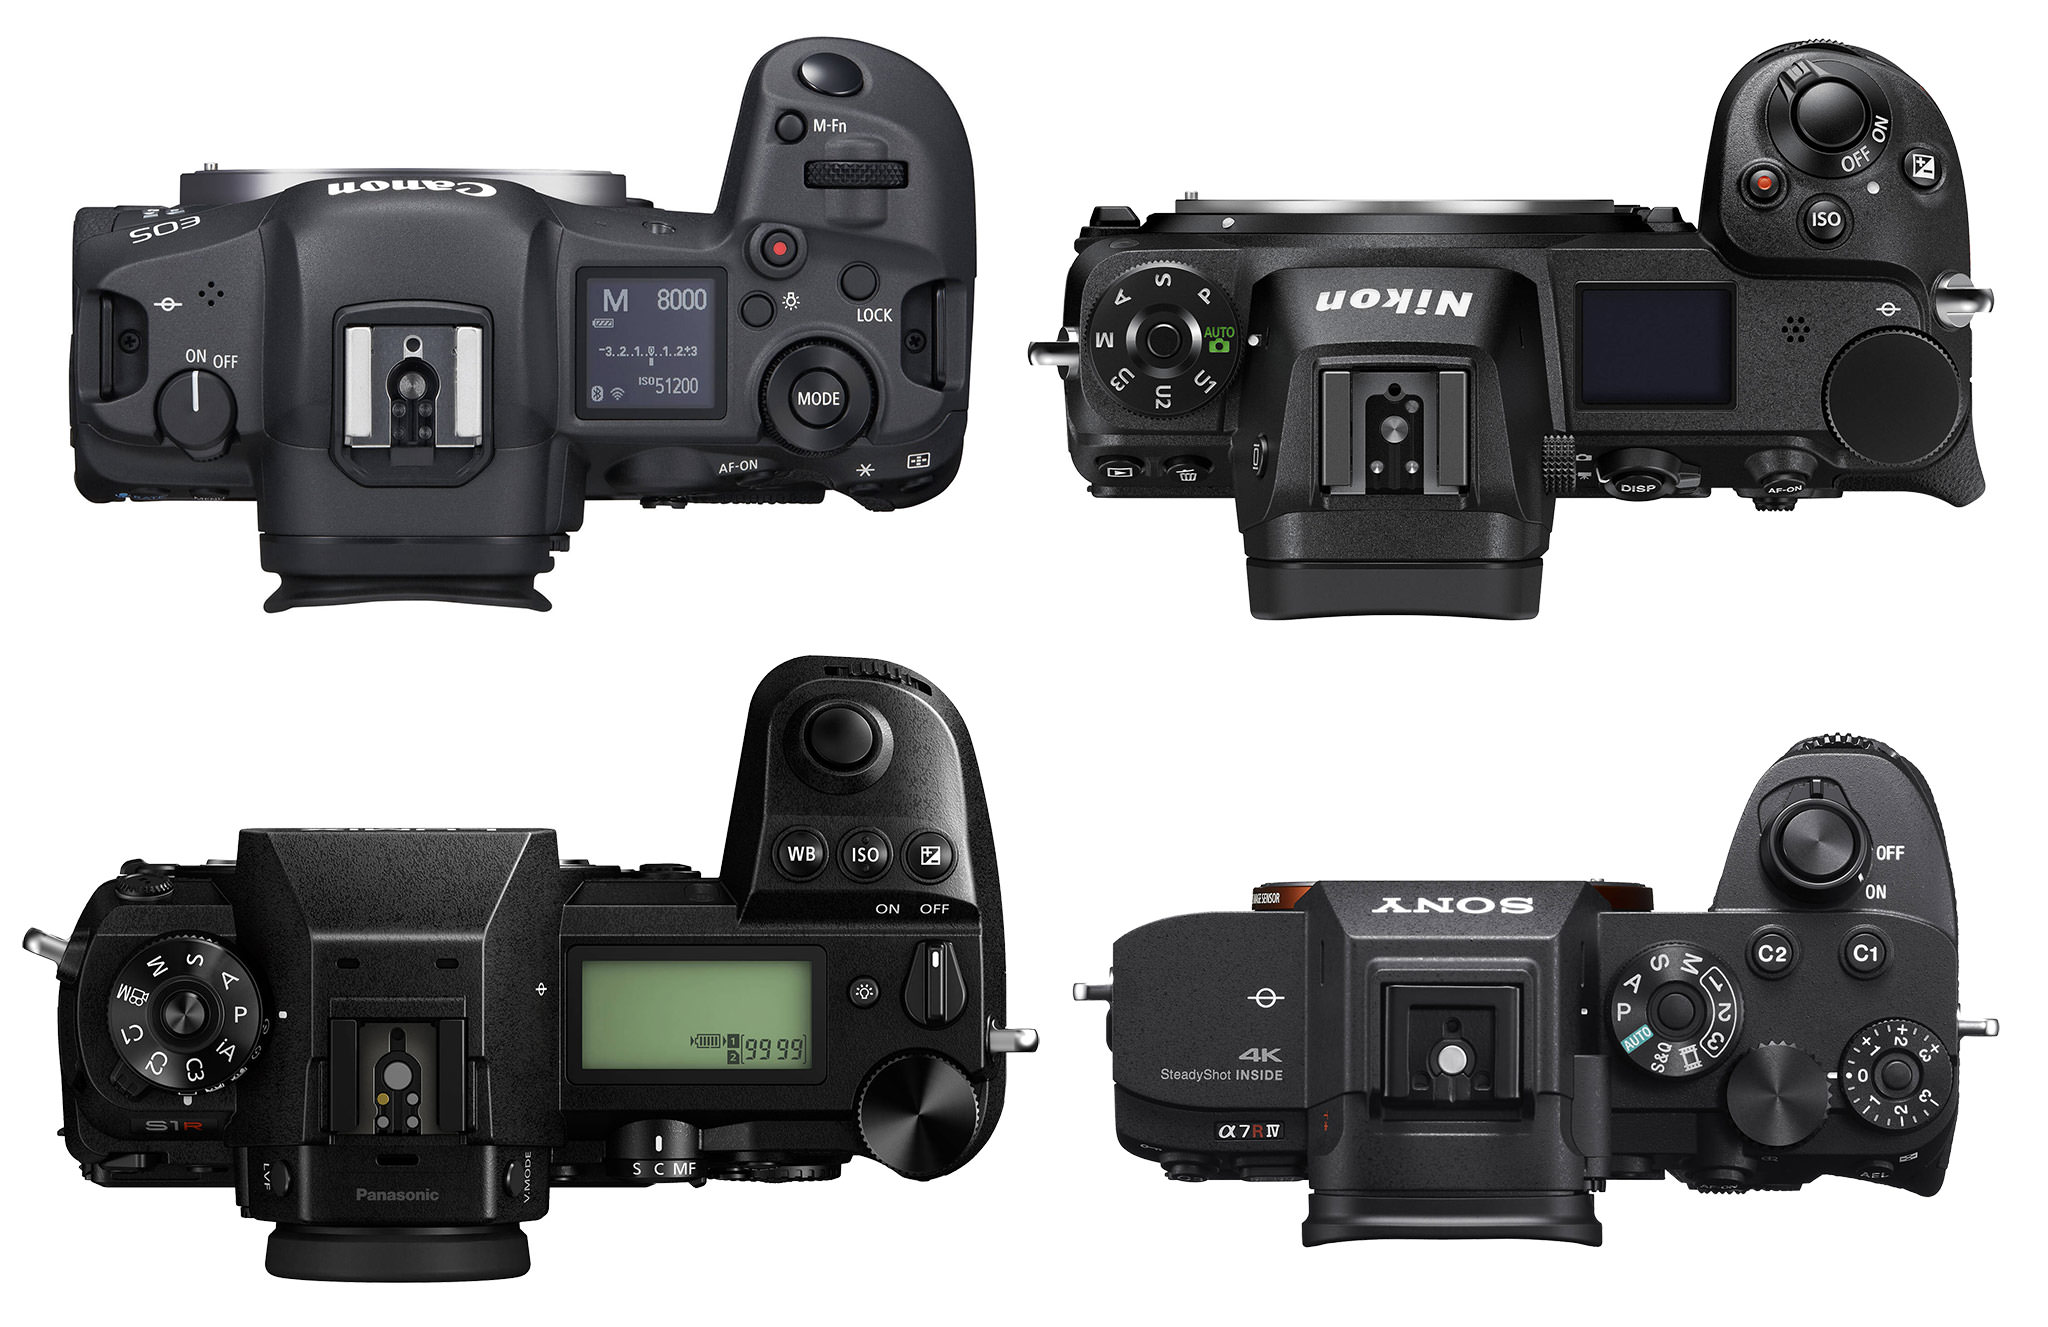 100-400mm Lens Size Comparison: Leica vs Sony vs Canon vs Nikon